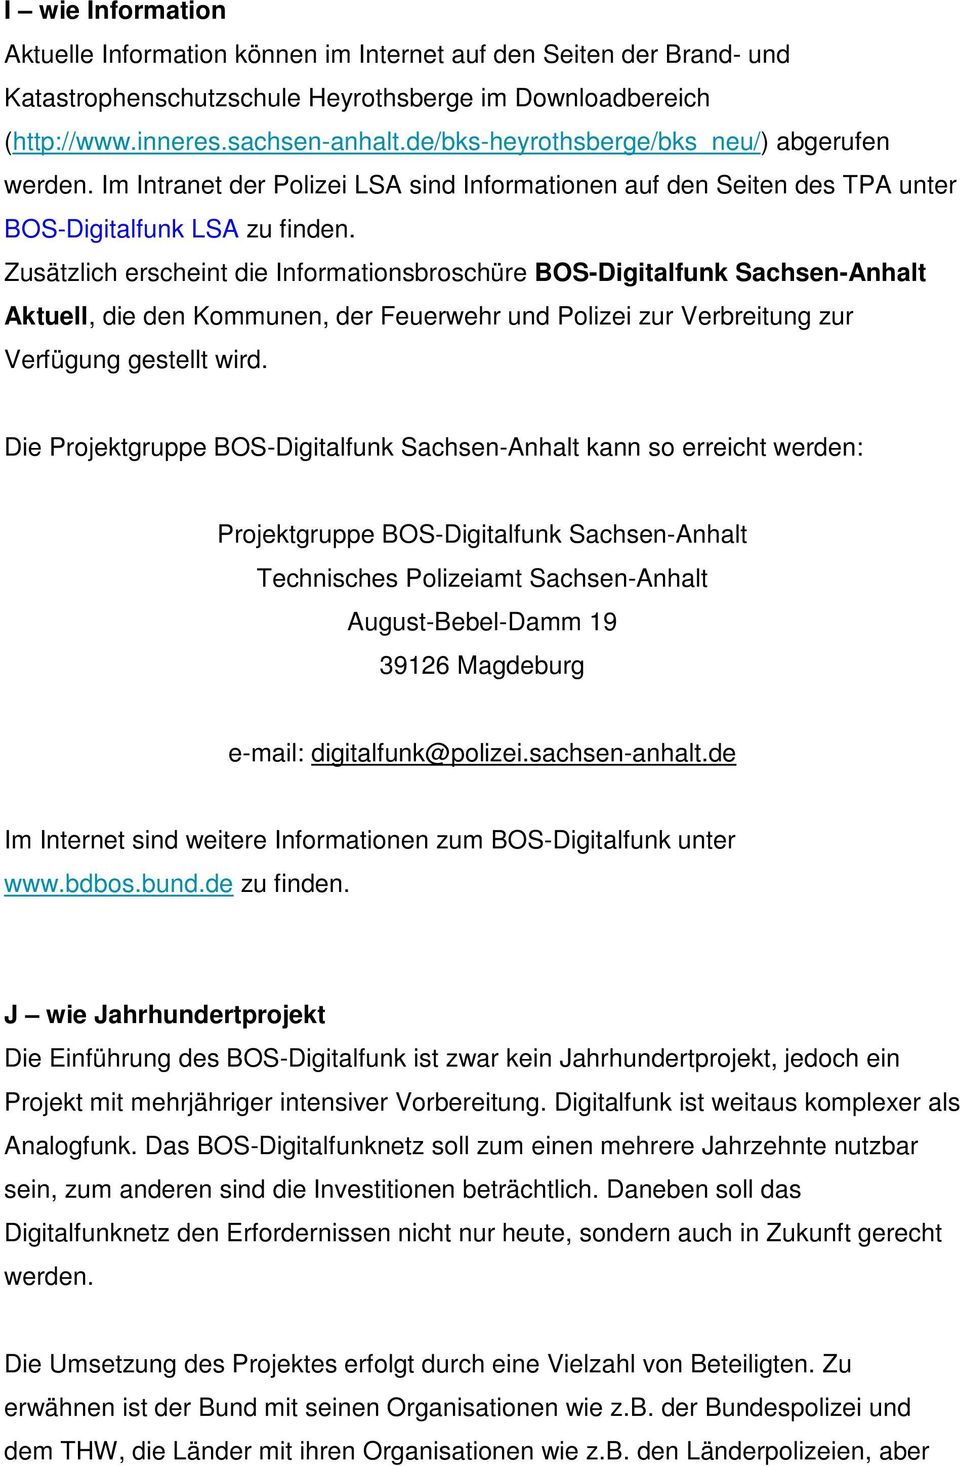 Zusätzlich erscheint die Informationsbroschüre BOS-Digitalfunk Sachsen-Anhalt Aktuell, die den Kommunen, der Feuerwehr und Polizei zur Verbreitung zur Verfügung gestellt wird.